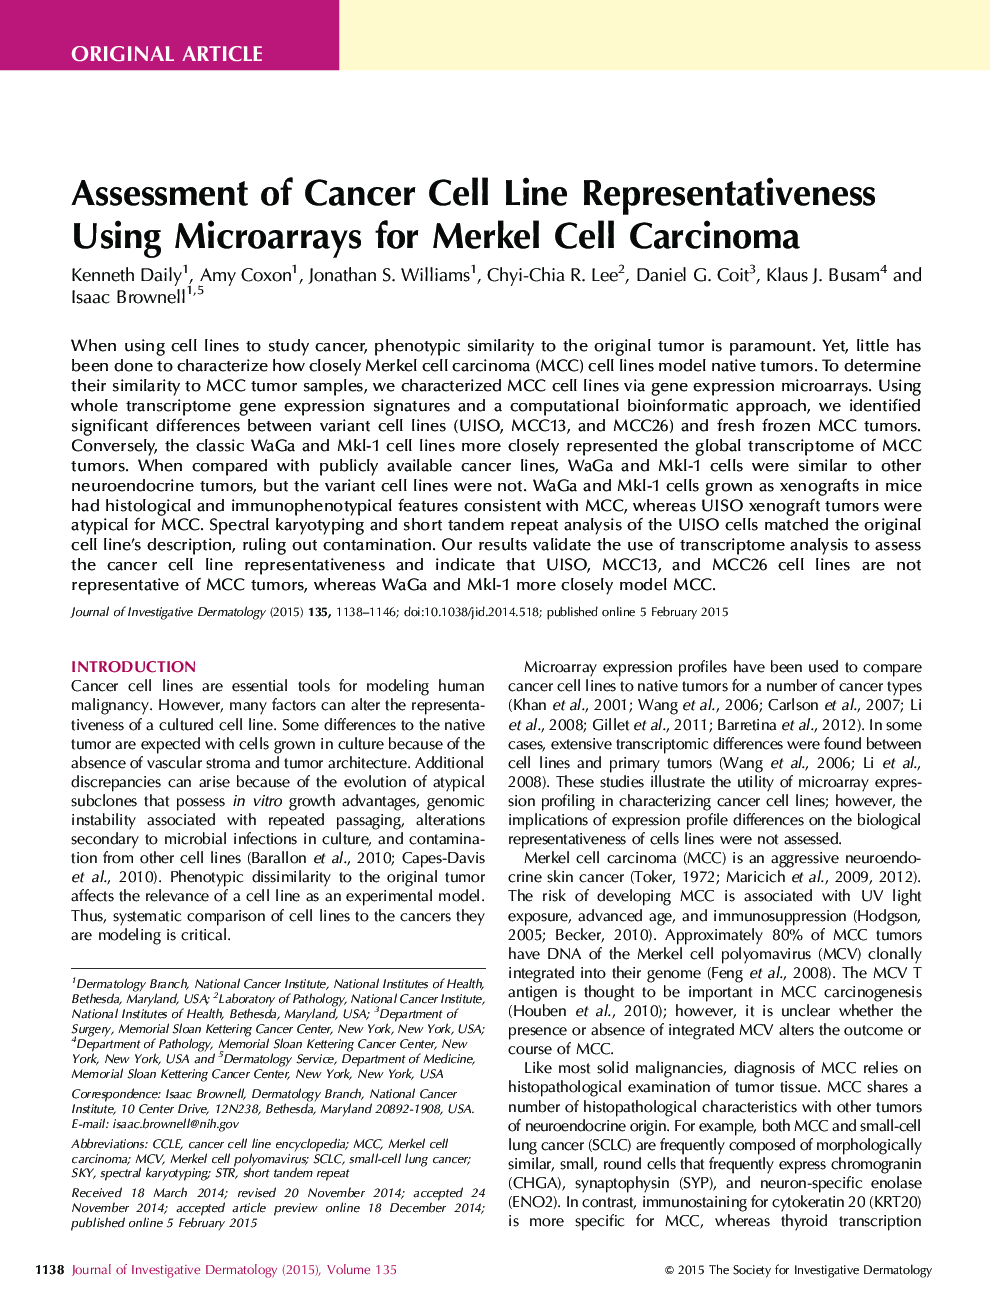 بررسی نقش نمایندگی خط سلول سرطانی با استفاده از میکرواراسیون برای کارسینوم سلول مرکز 